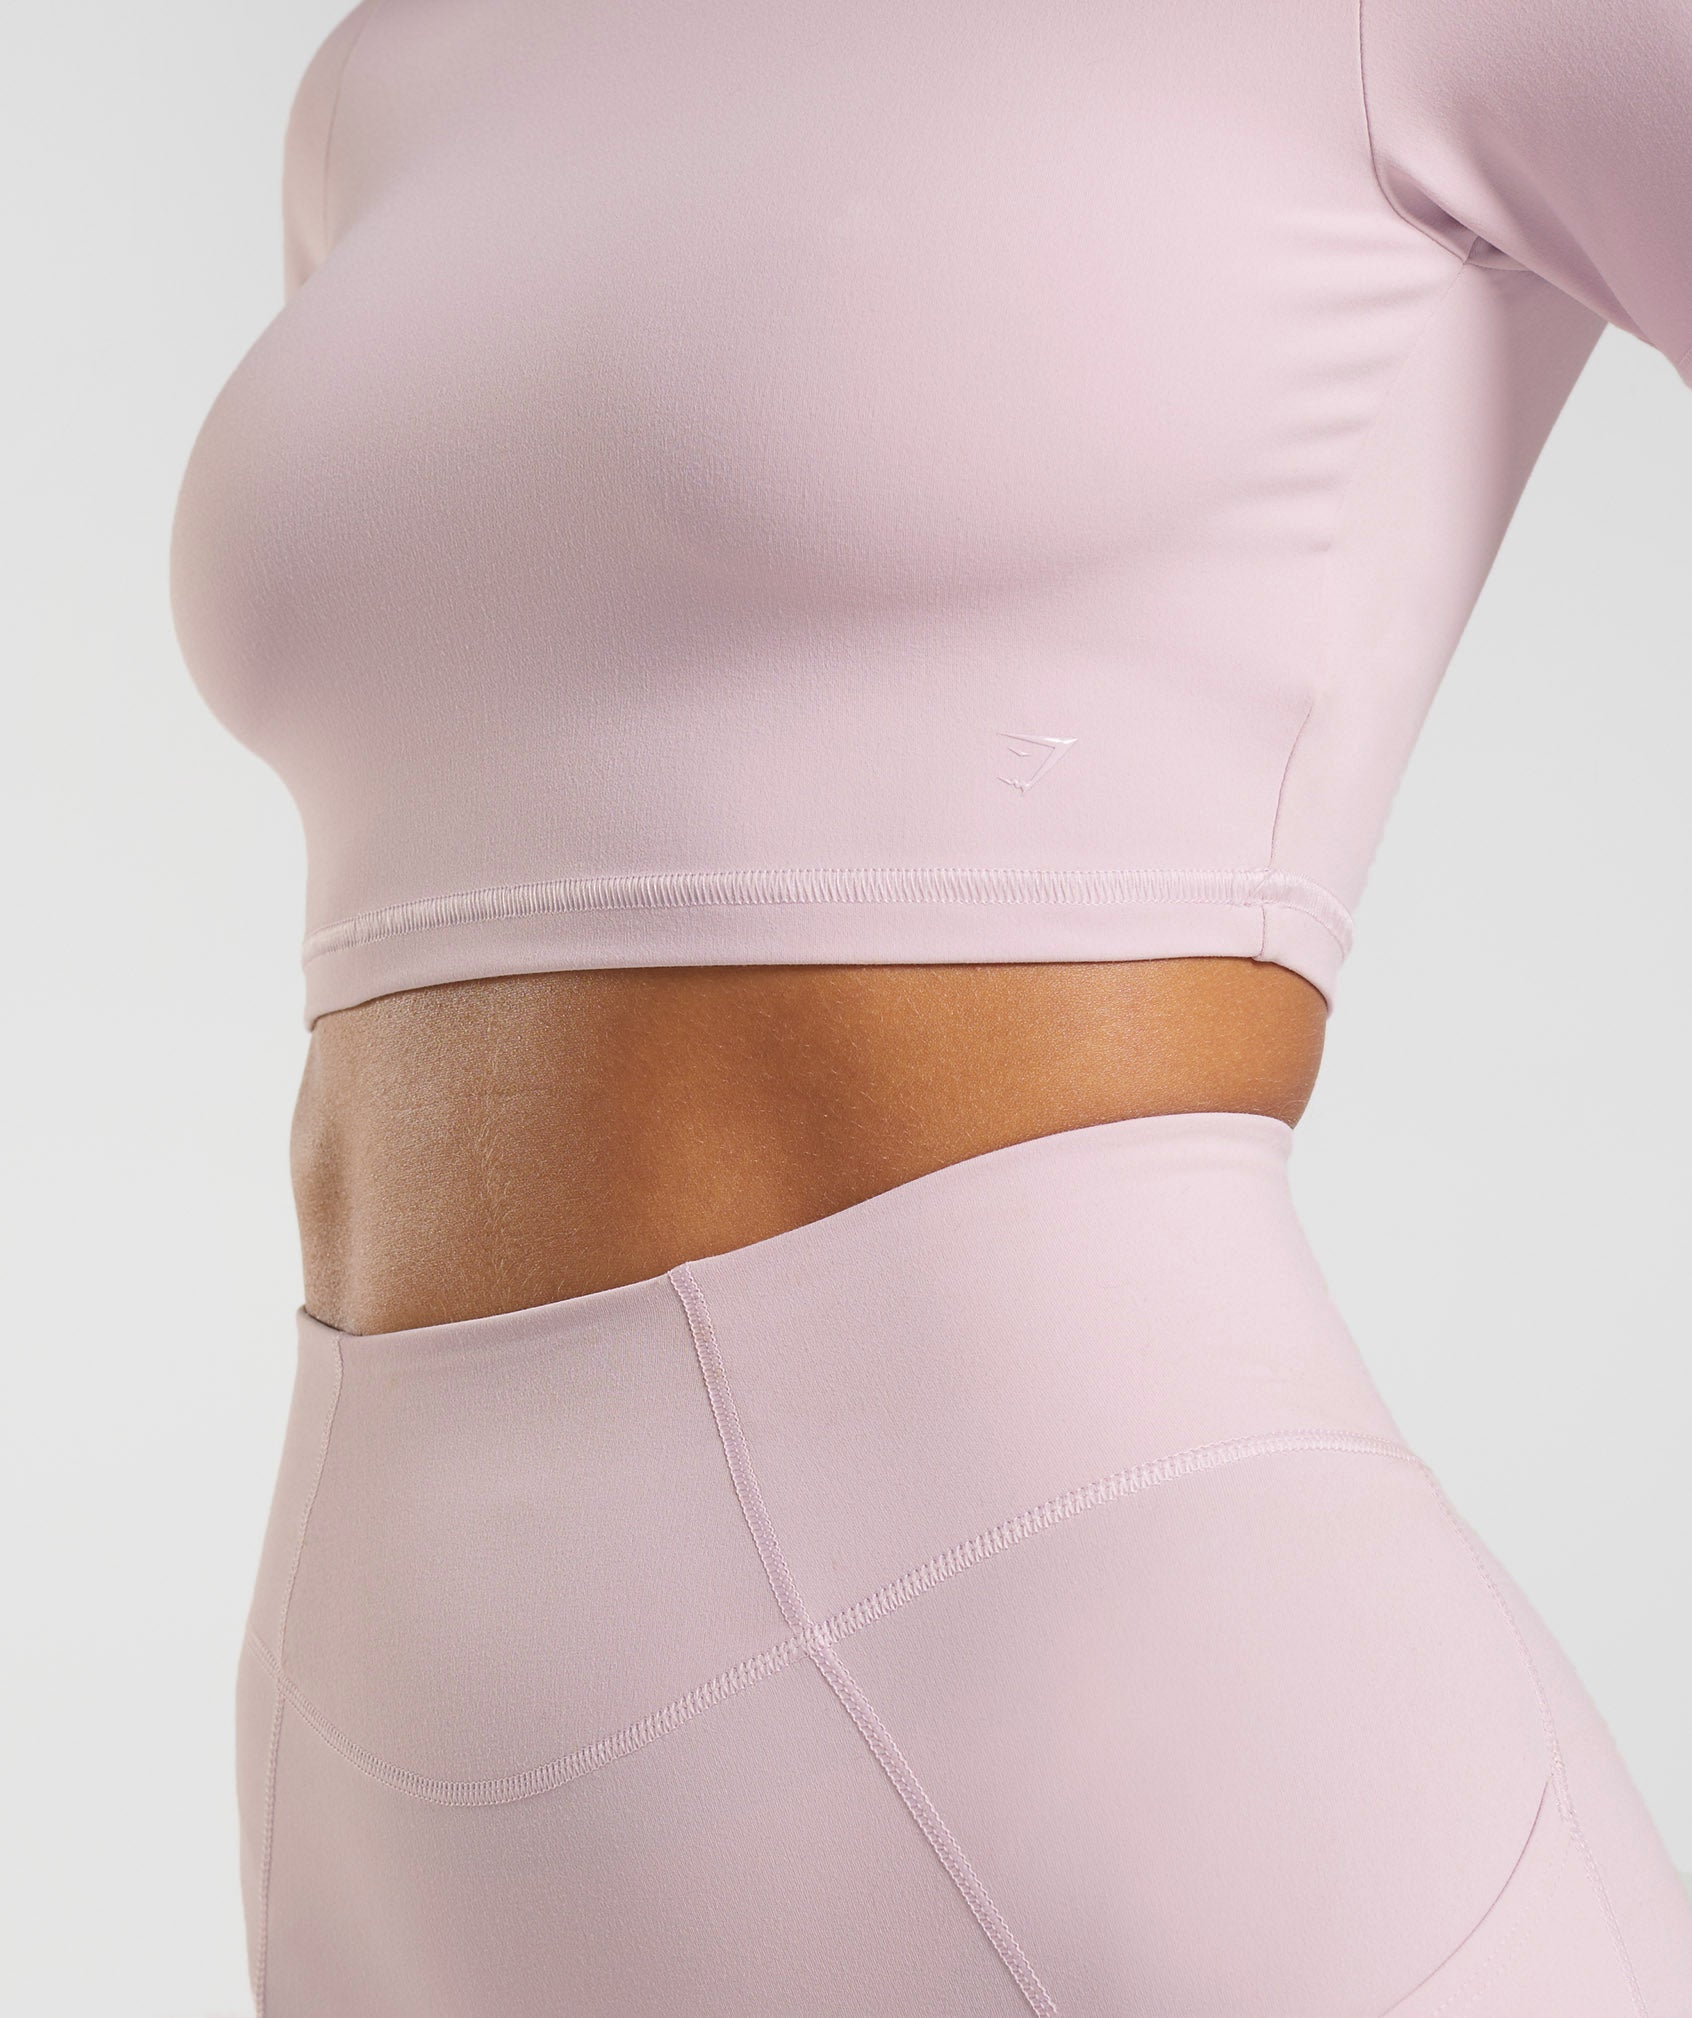 Whitney Short Sleeve Crop Top in Pressed Petal Pink